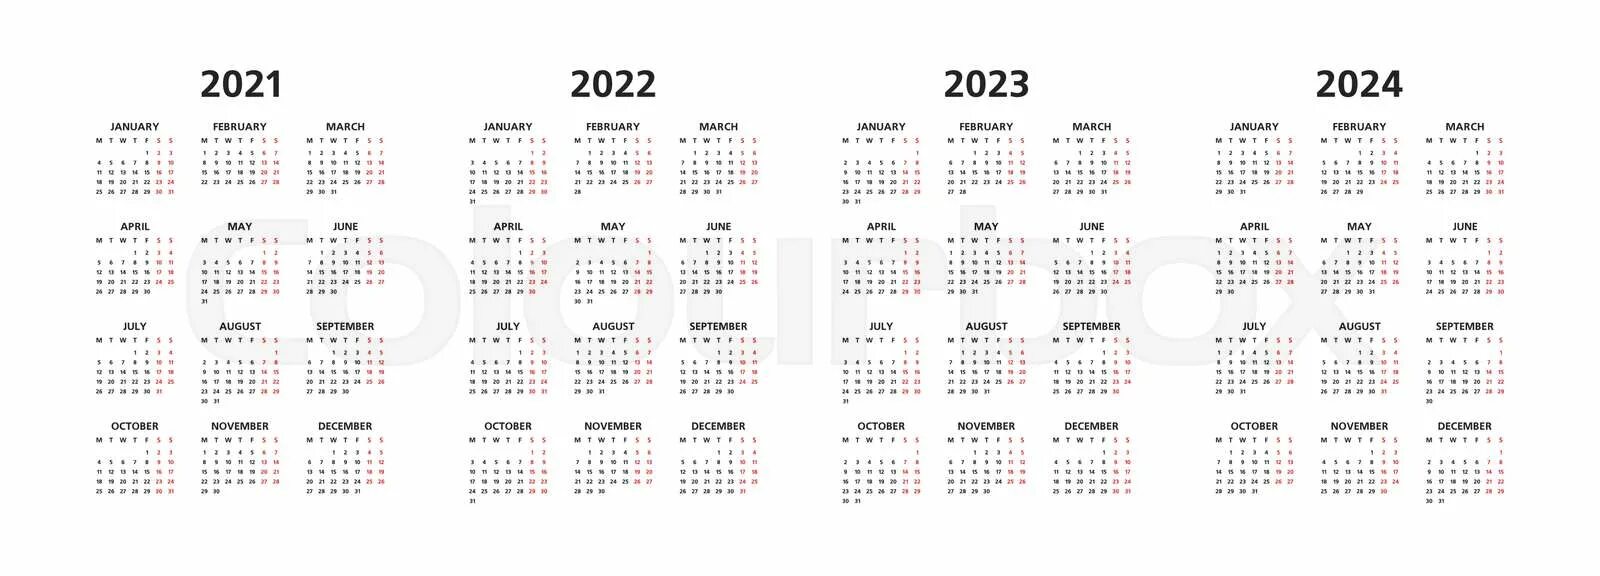 Когда переведут время в европе в 2024. Календарь на 2023-2024 годы. Календарики на 2023 и 2024 года. Календарь 2021 2022 2023 2024. Календарик на 2024 год.